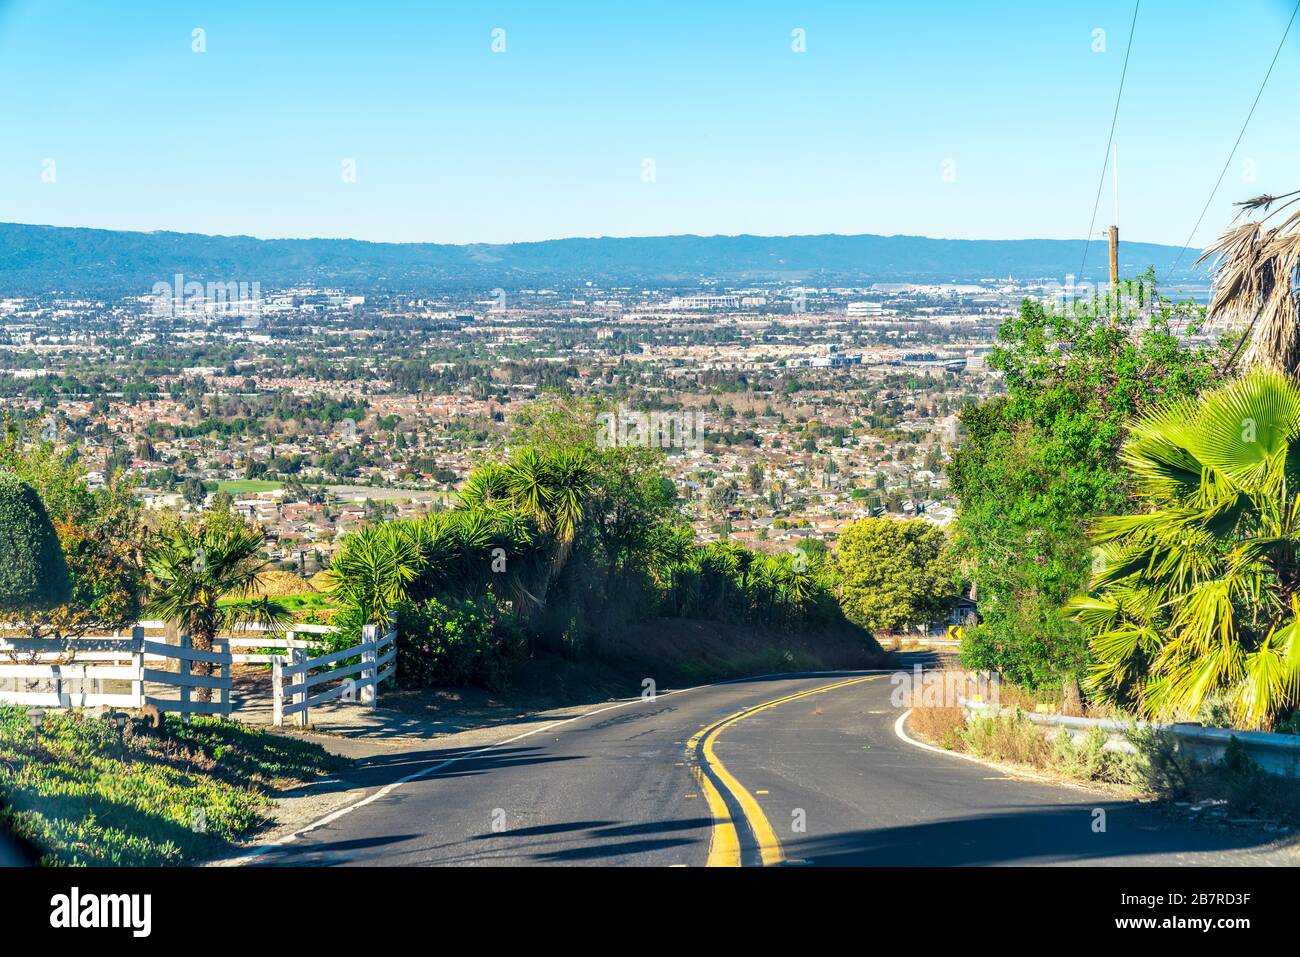 Silicon Valley, California Stock Photo